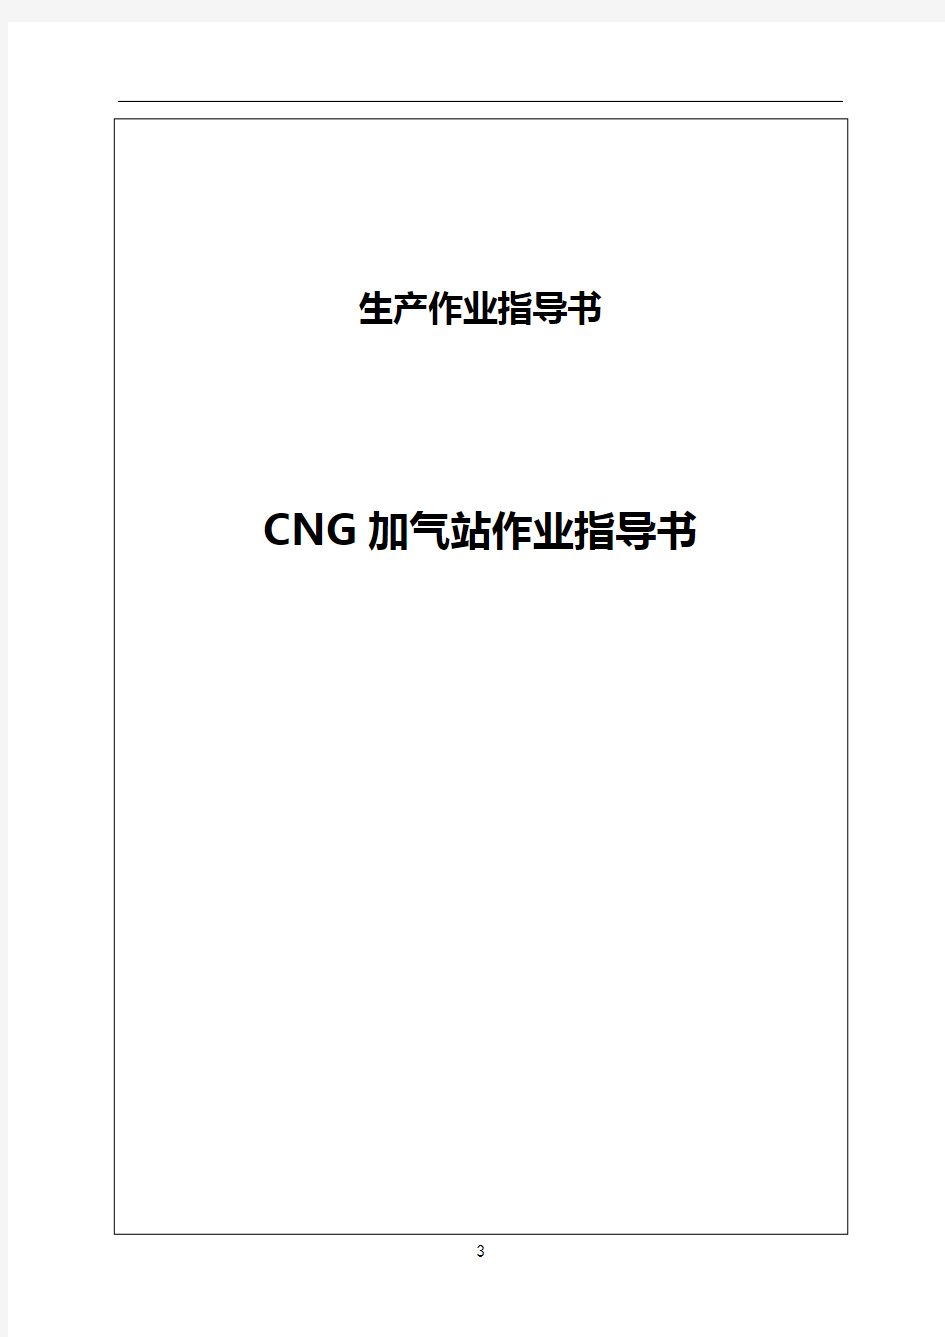 CNG加气站作业指导书分解